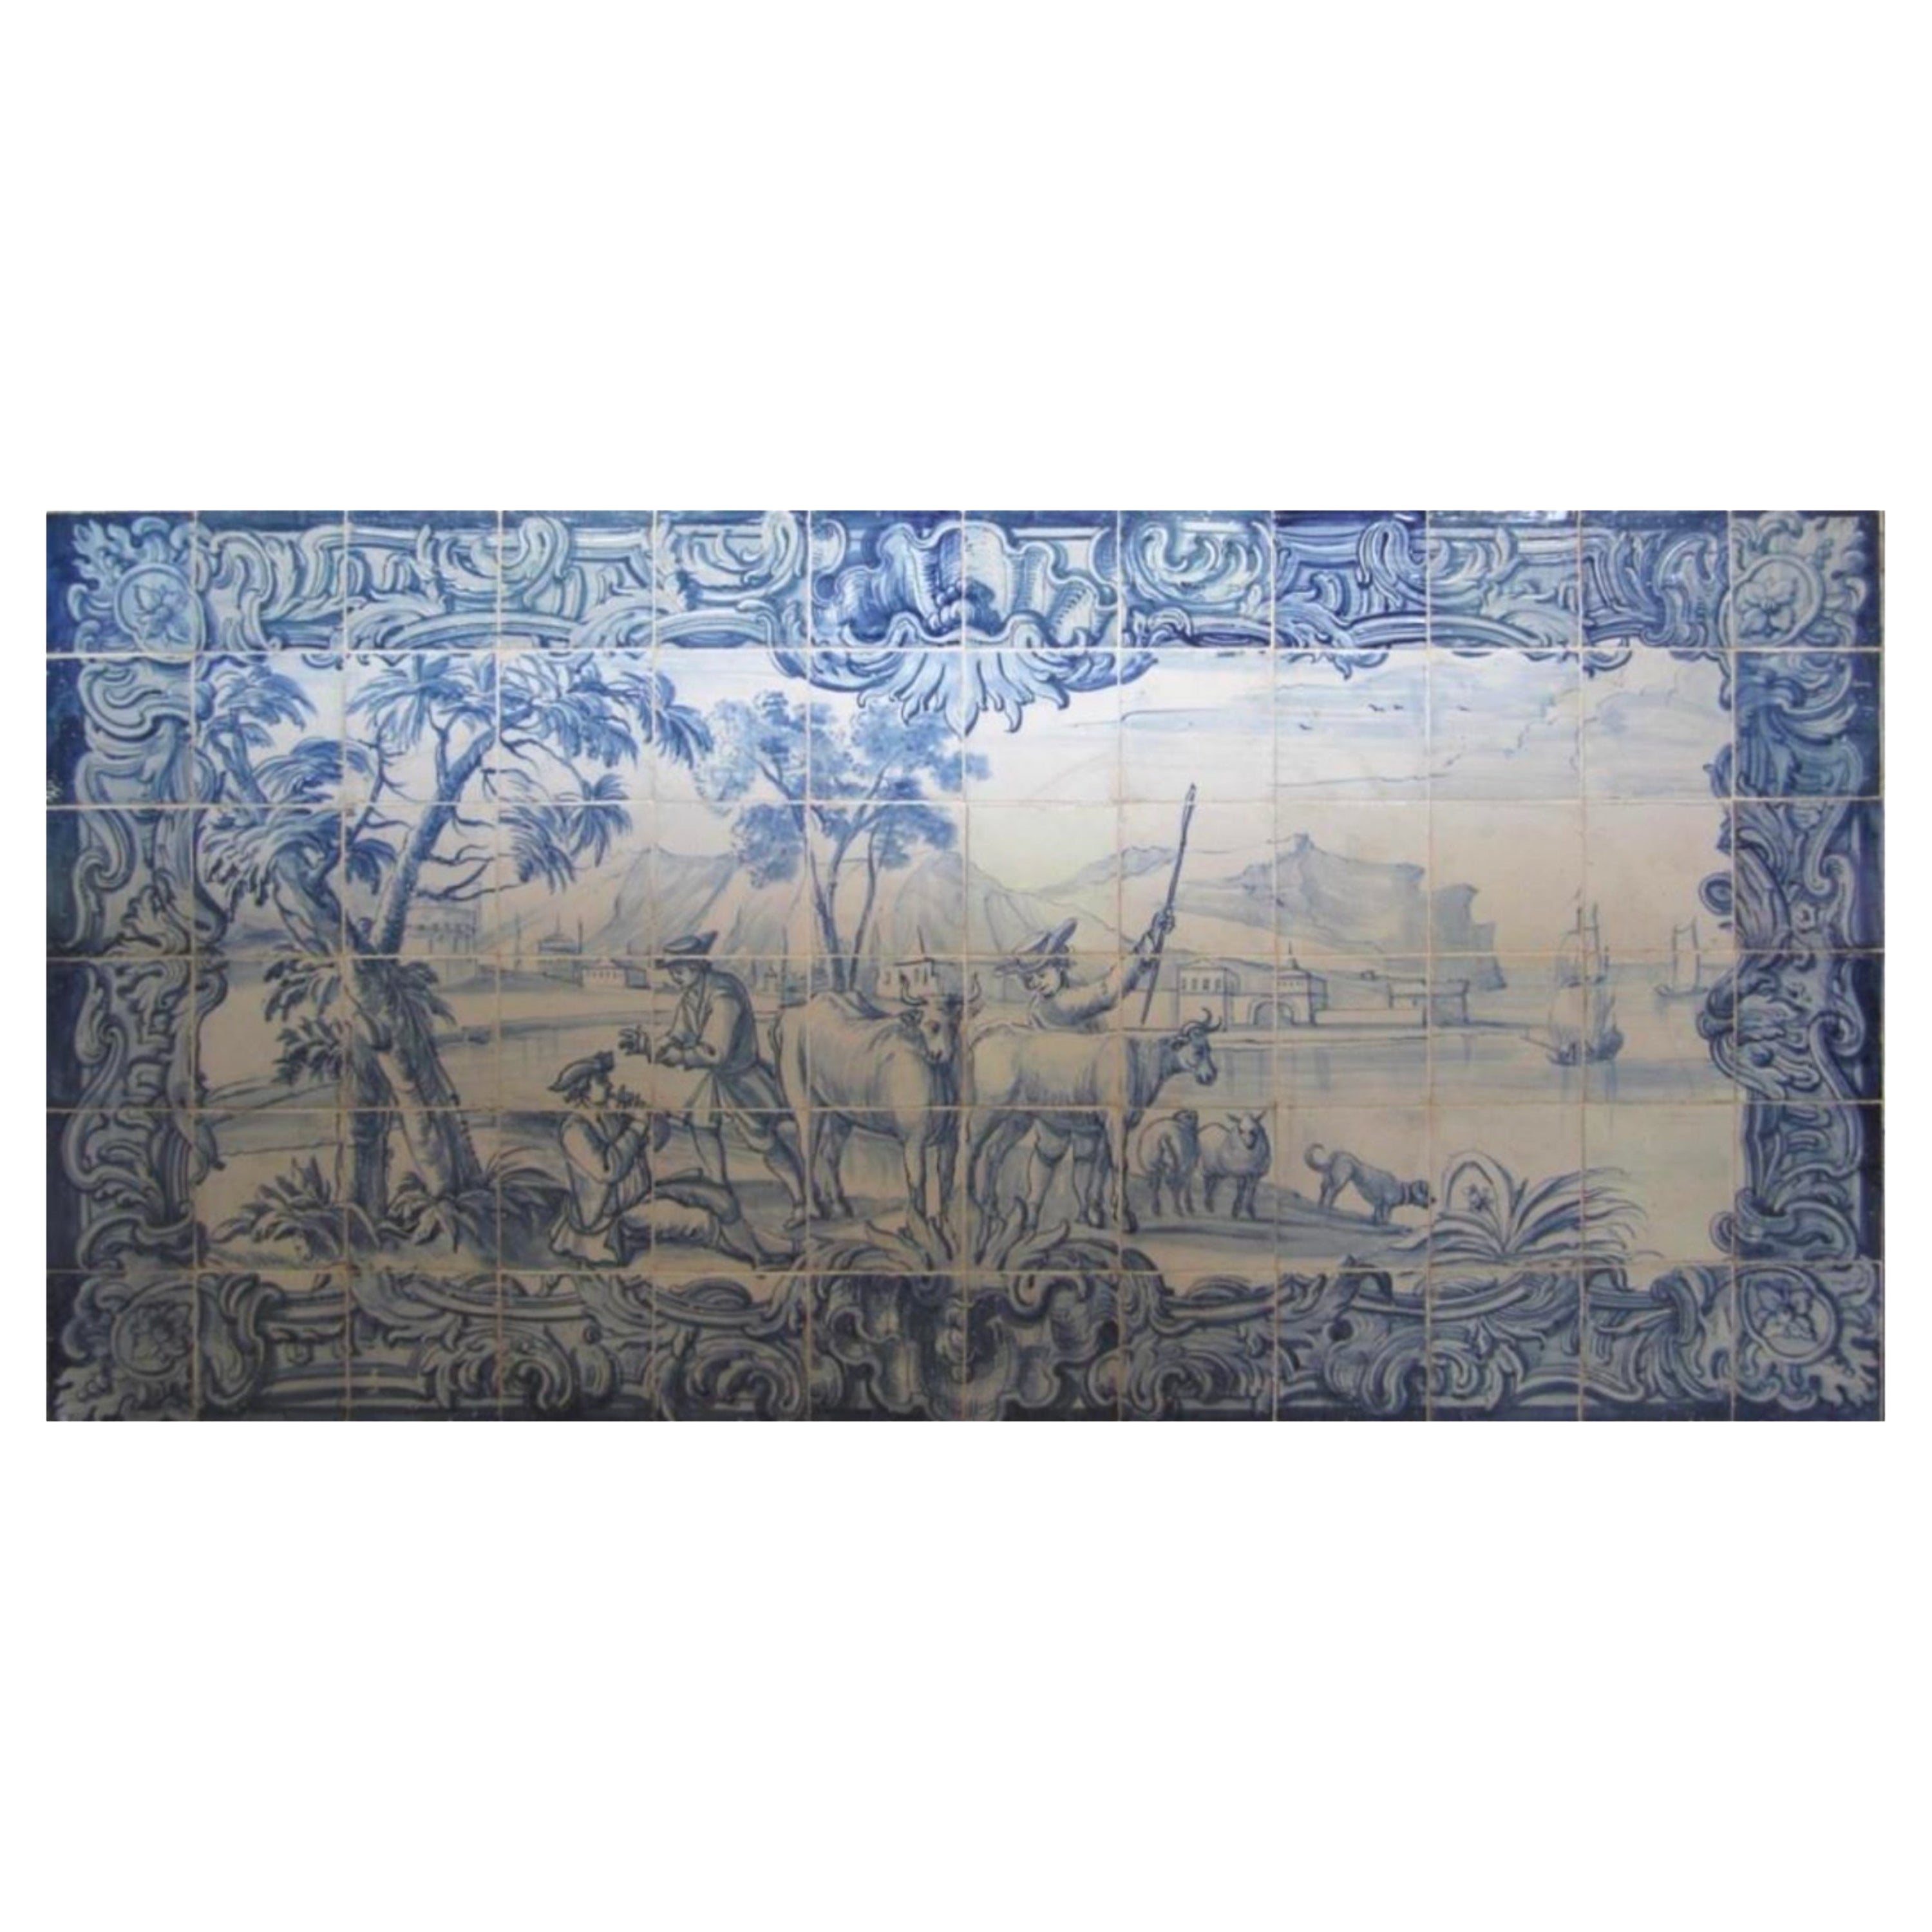 18th Century Portuguese "Azulejos" Panel "Contryside Scene"